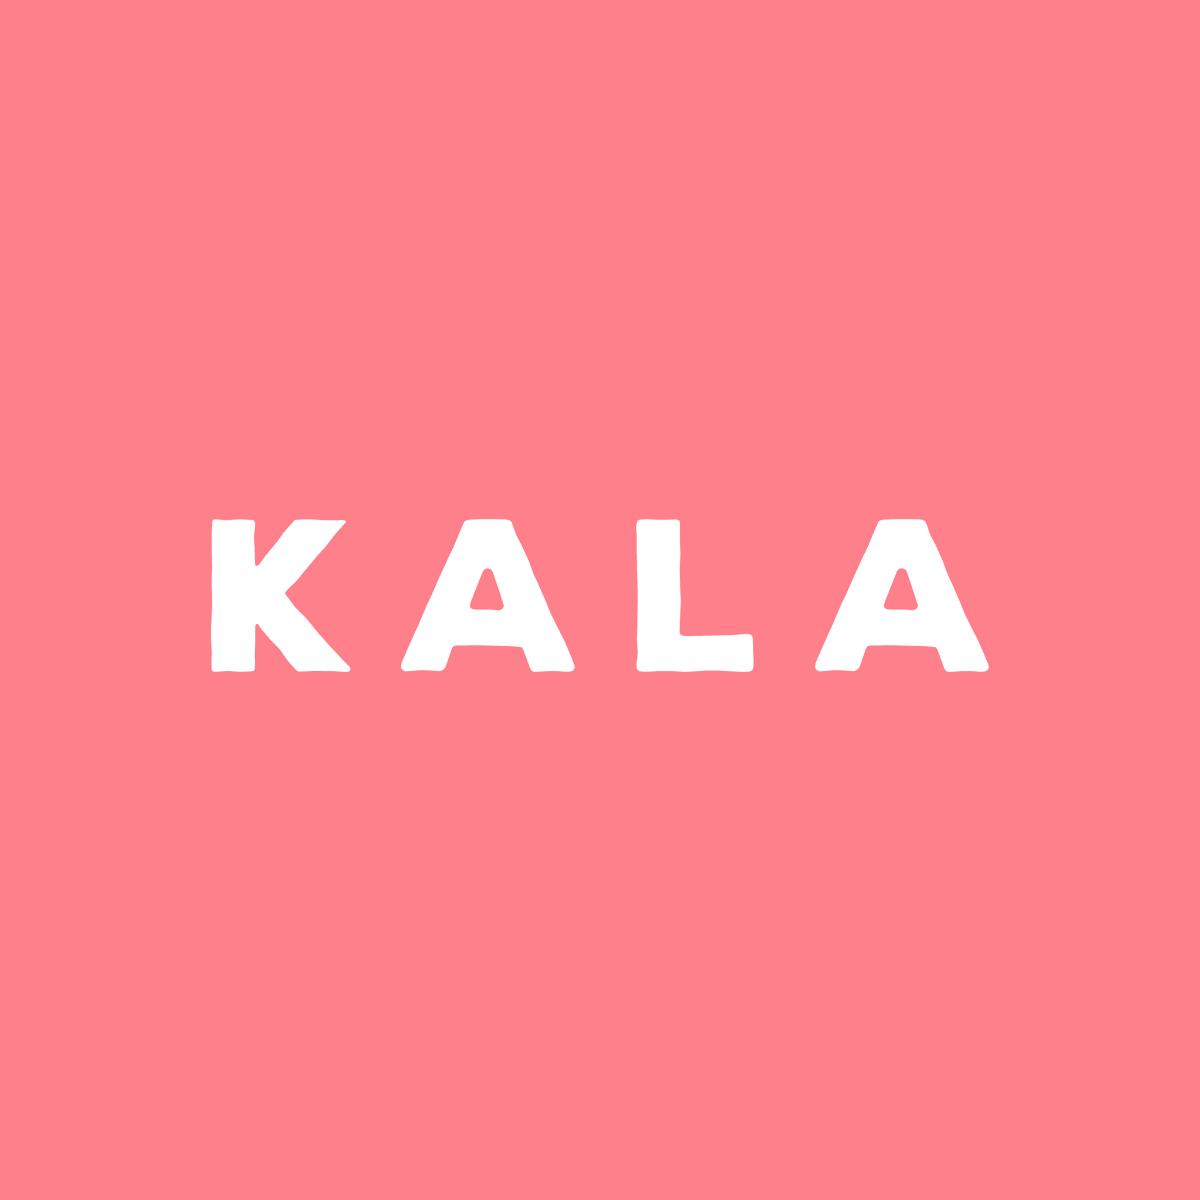 Kala Festival